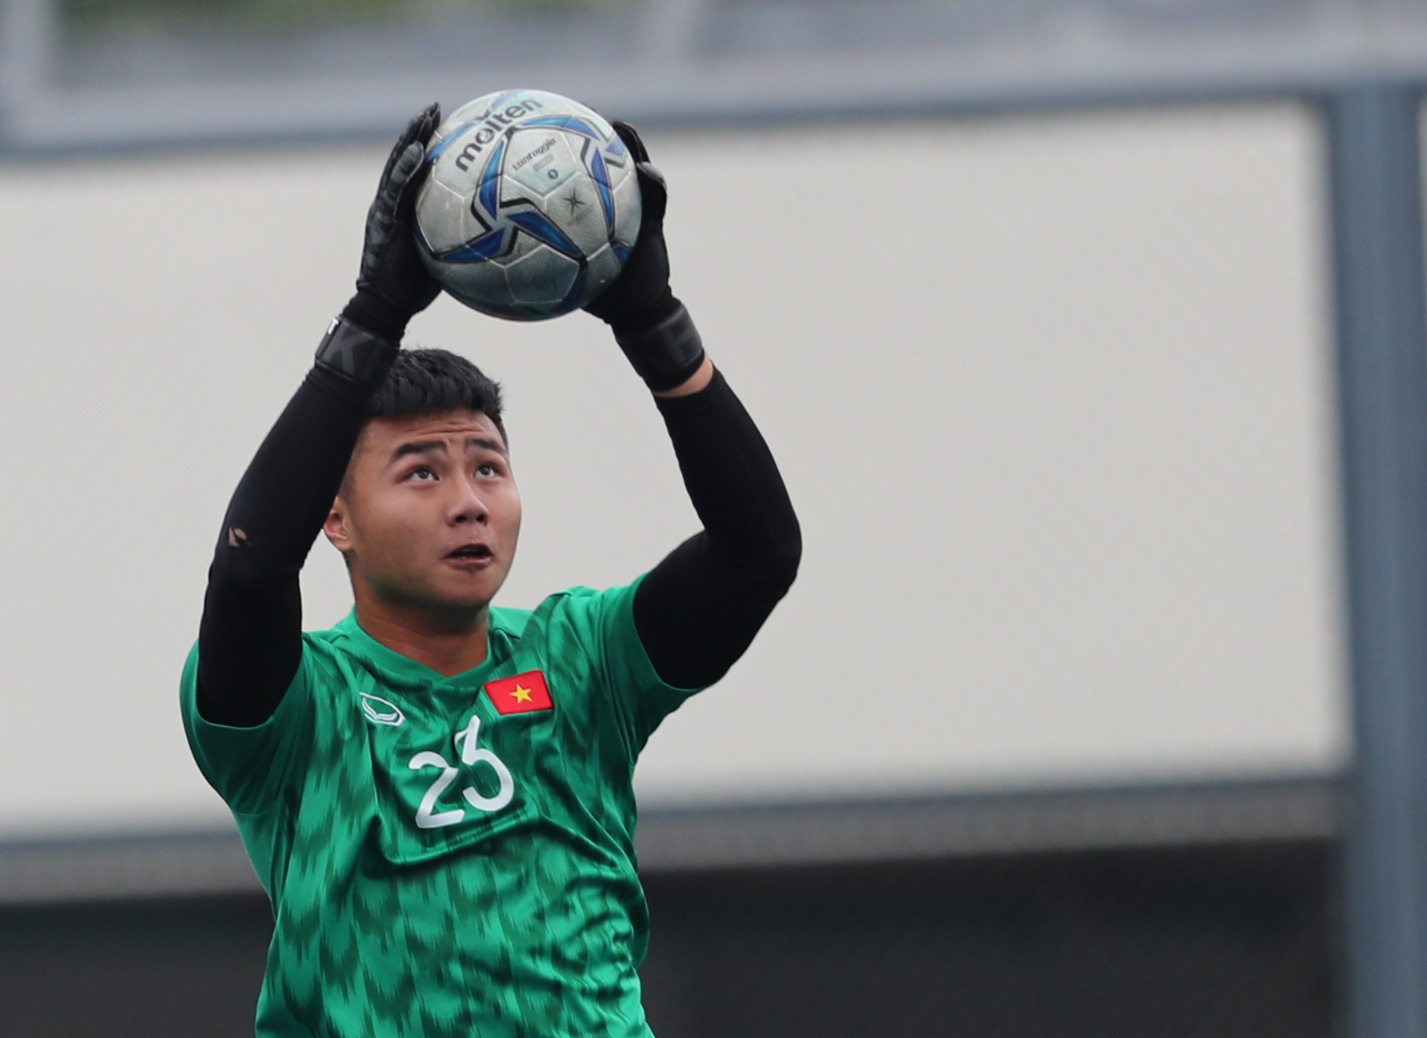 Từ cậu bé nông thôn, Văn Toản hiện tại đã là thủ môn xuất sắc của CLB Hải Phòng.